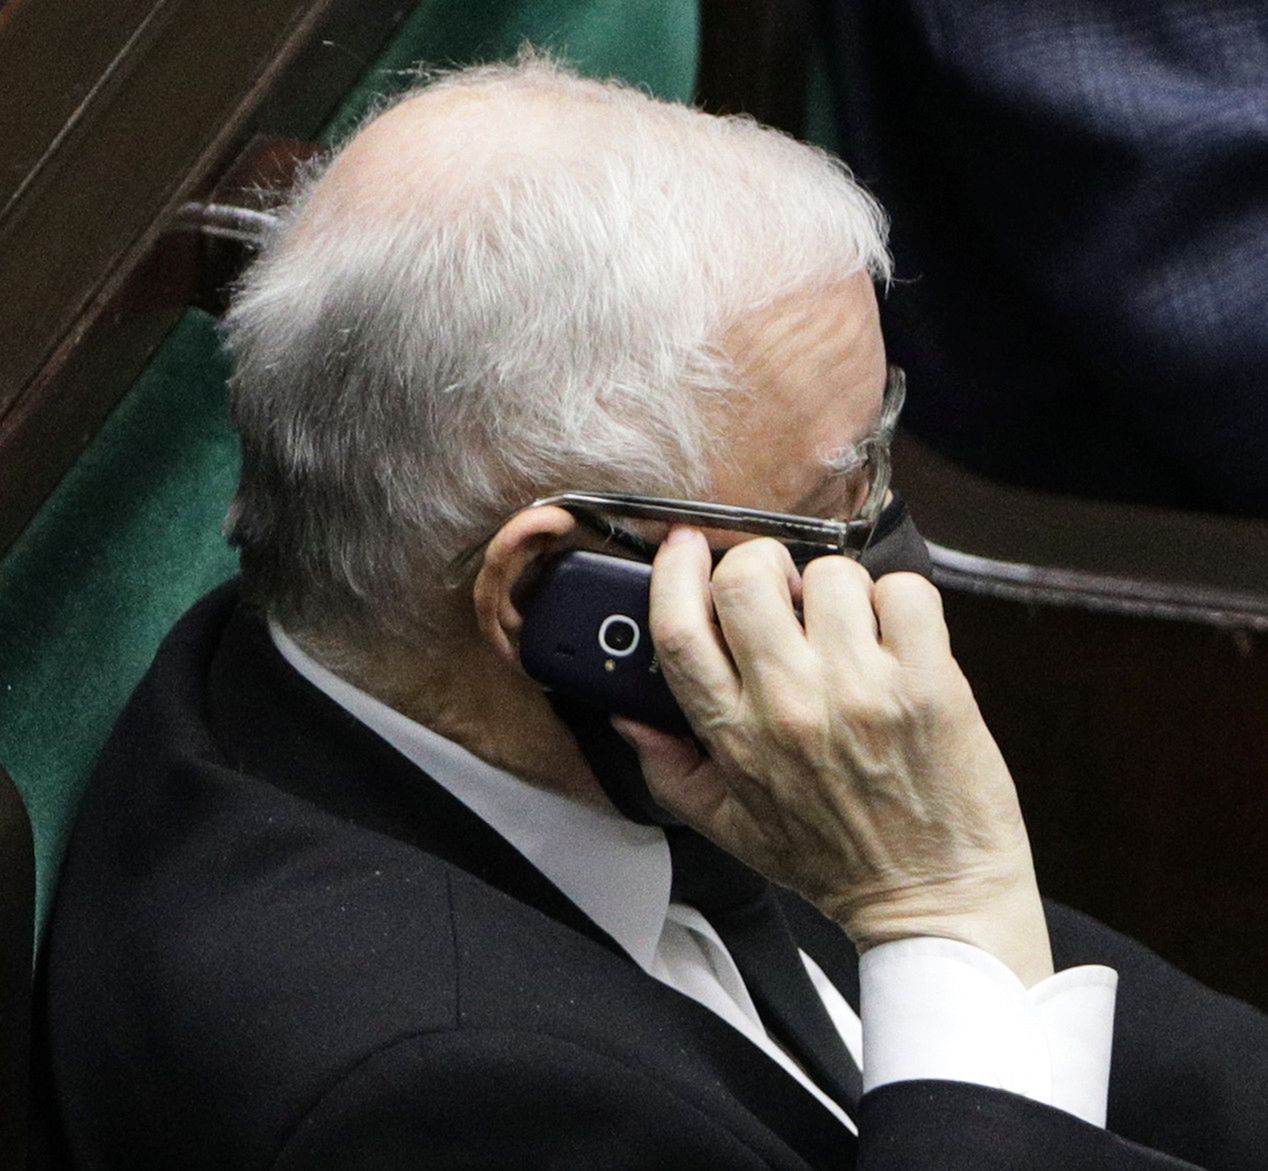 Jarosław Kaczyński podczas posiedzenia Sejmu dał się przyłapać z telefonem